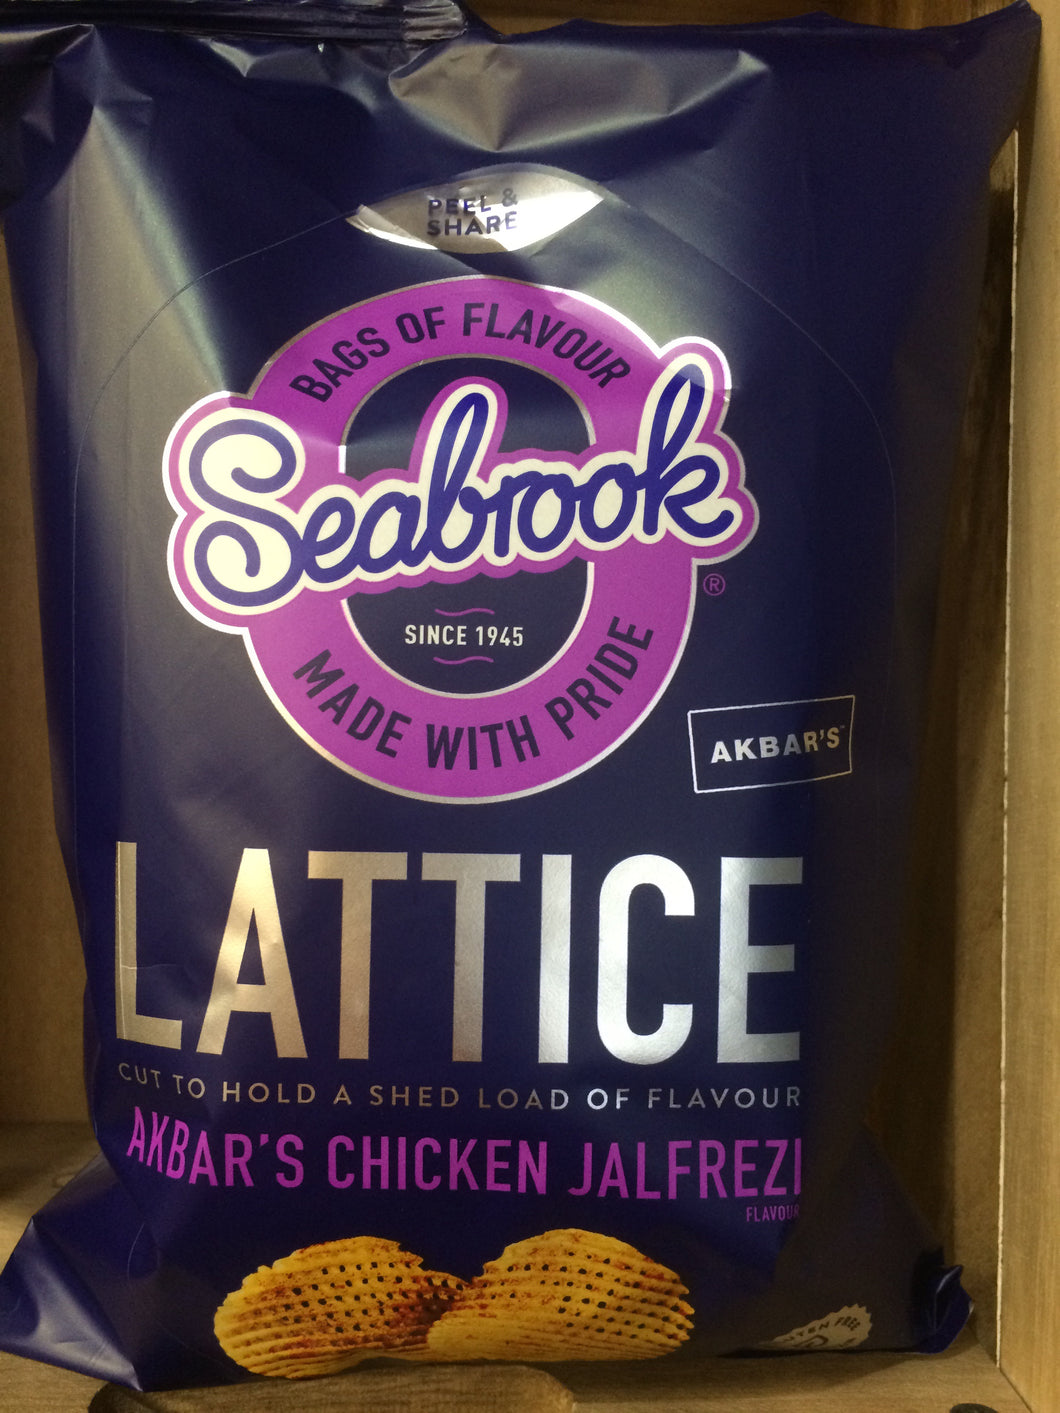 Seabrooks Latice Akbars Chicken Jalfrezi 120g